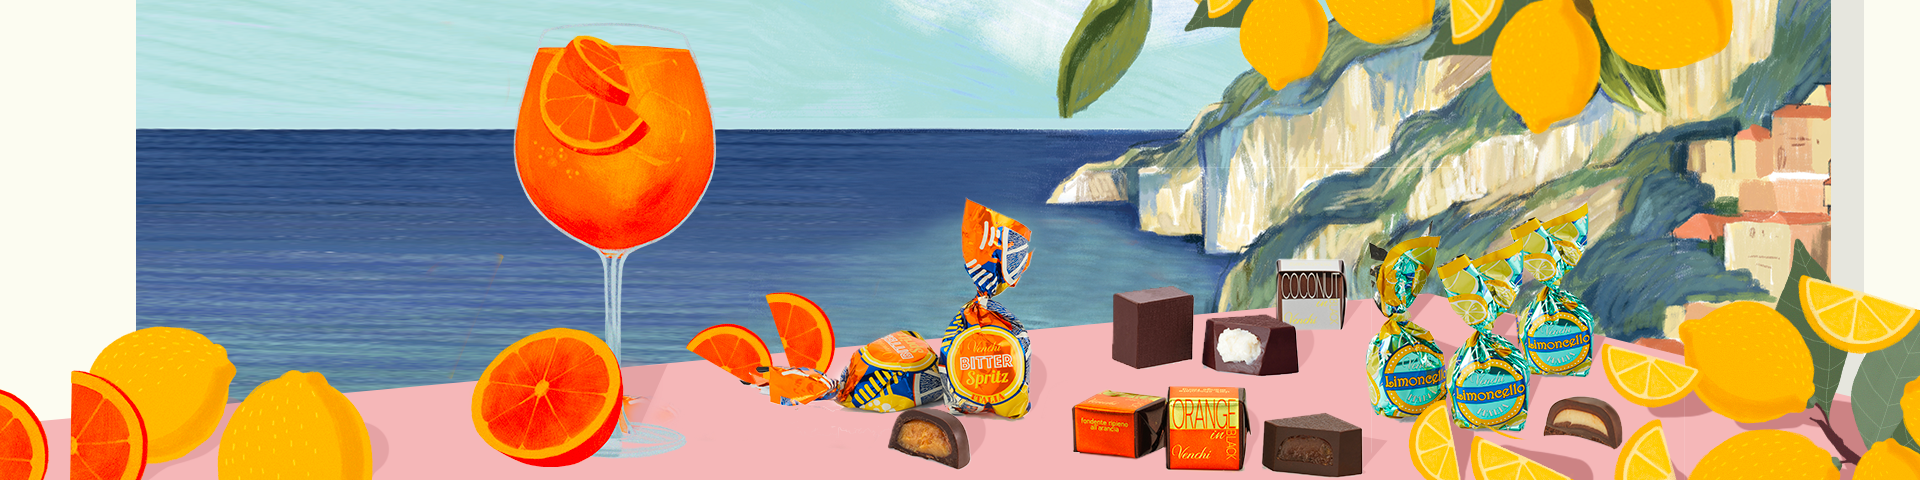 L'immagine mostra una vista sulla costiera Amalfitana illustrata con una scogliera sul mare e acque cristalline. In primo piano i prodotti Venchi perfetti per l'estate con limoncello cocco o arancia